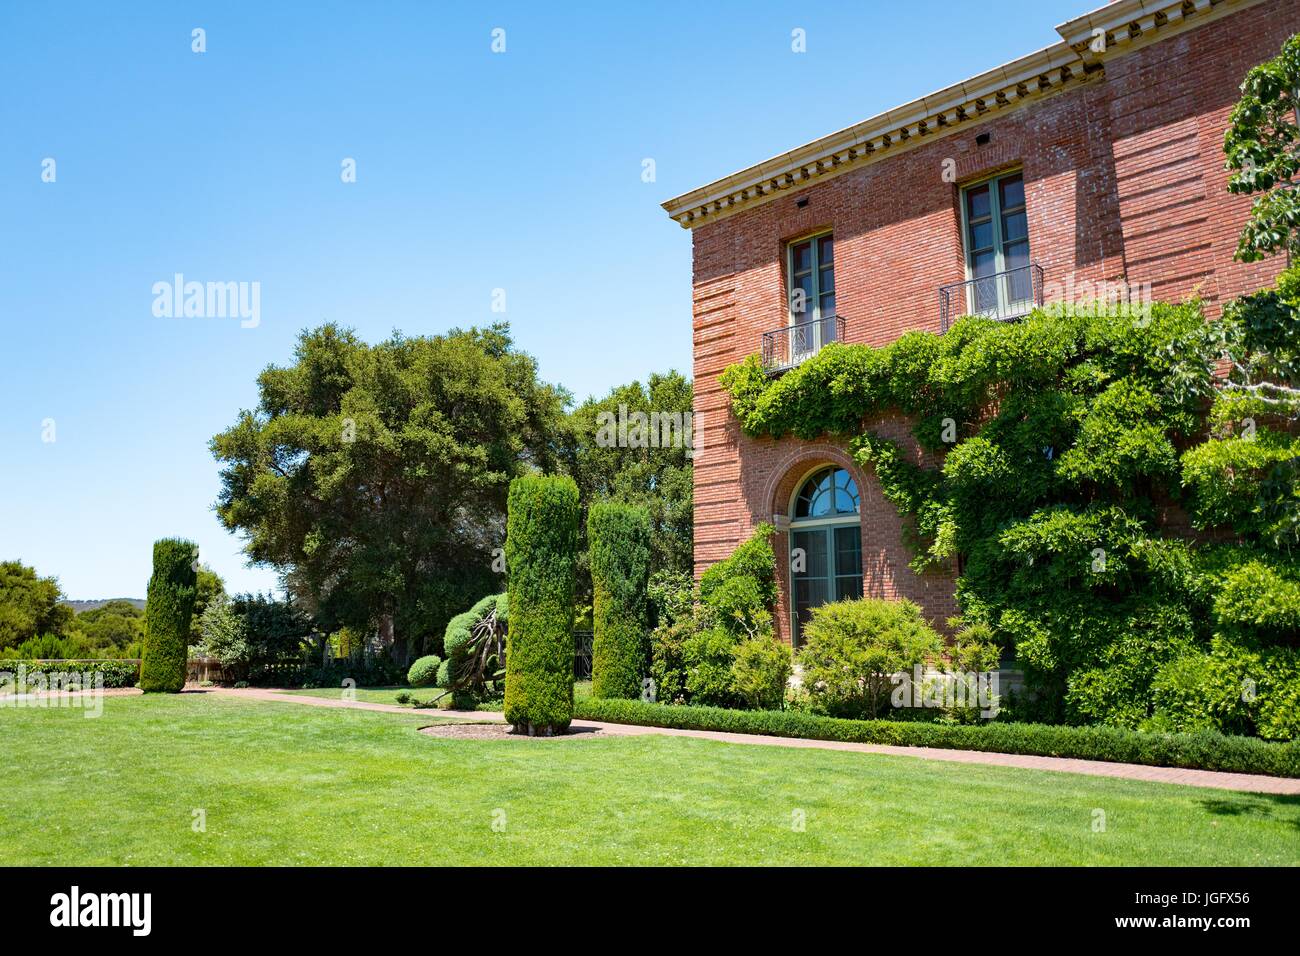 Maison principale, construit dans un style architectural éclectique de la Californie, avec terrasse à Filoli, un environnement préservé, Maison et jardin formel estate exploité par le National Trust for Historic Preservation de Woodside, Californie, le 23 juin 2017. Banque D'Images